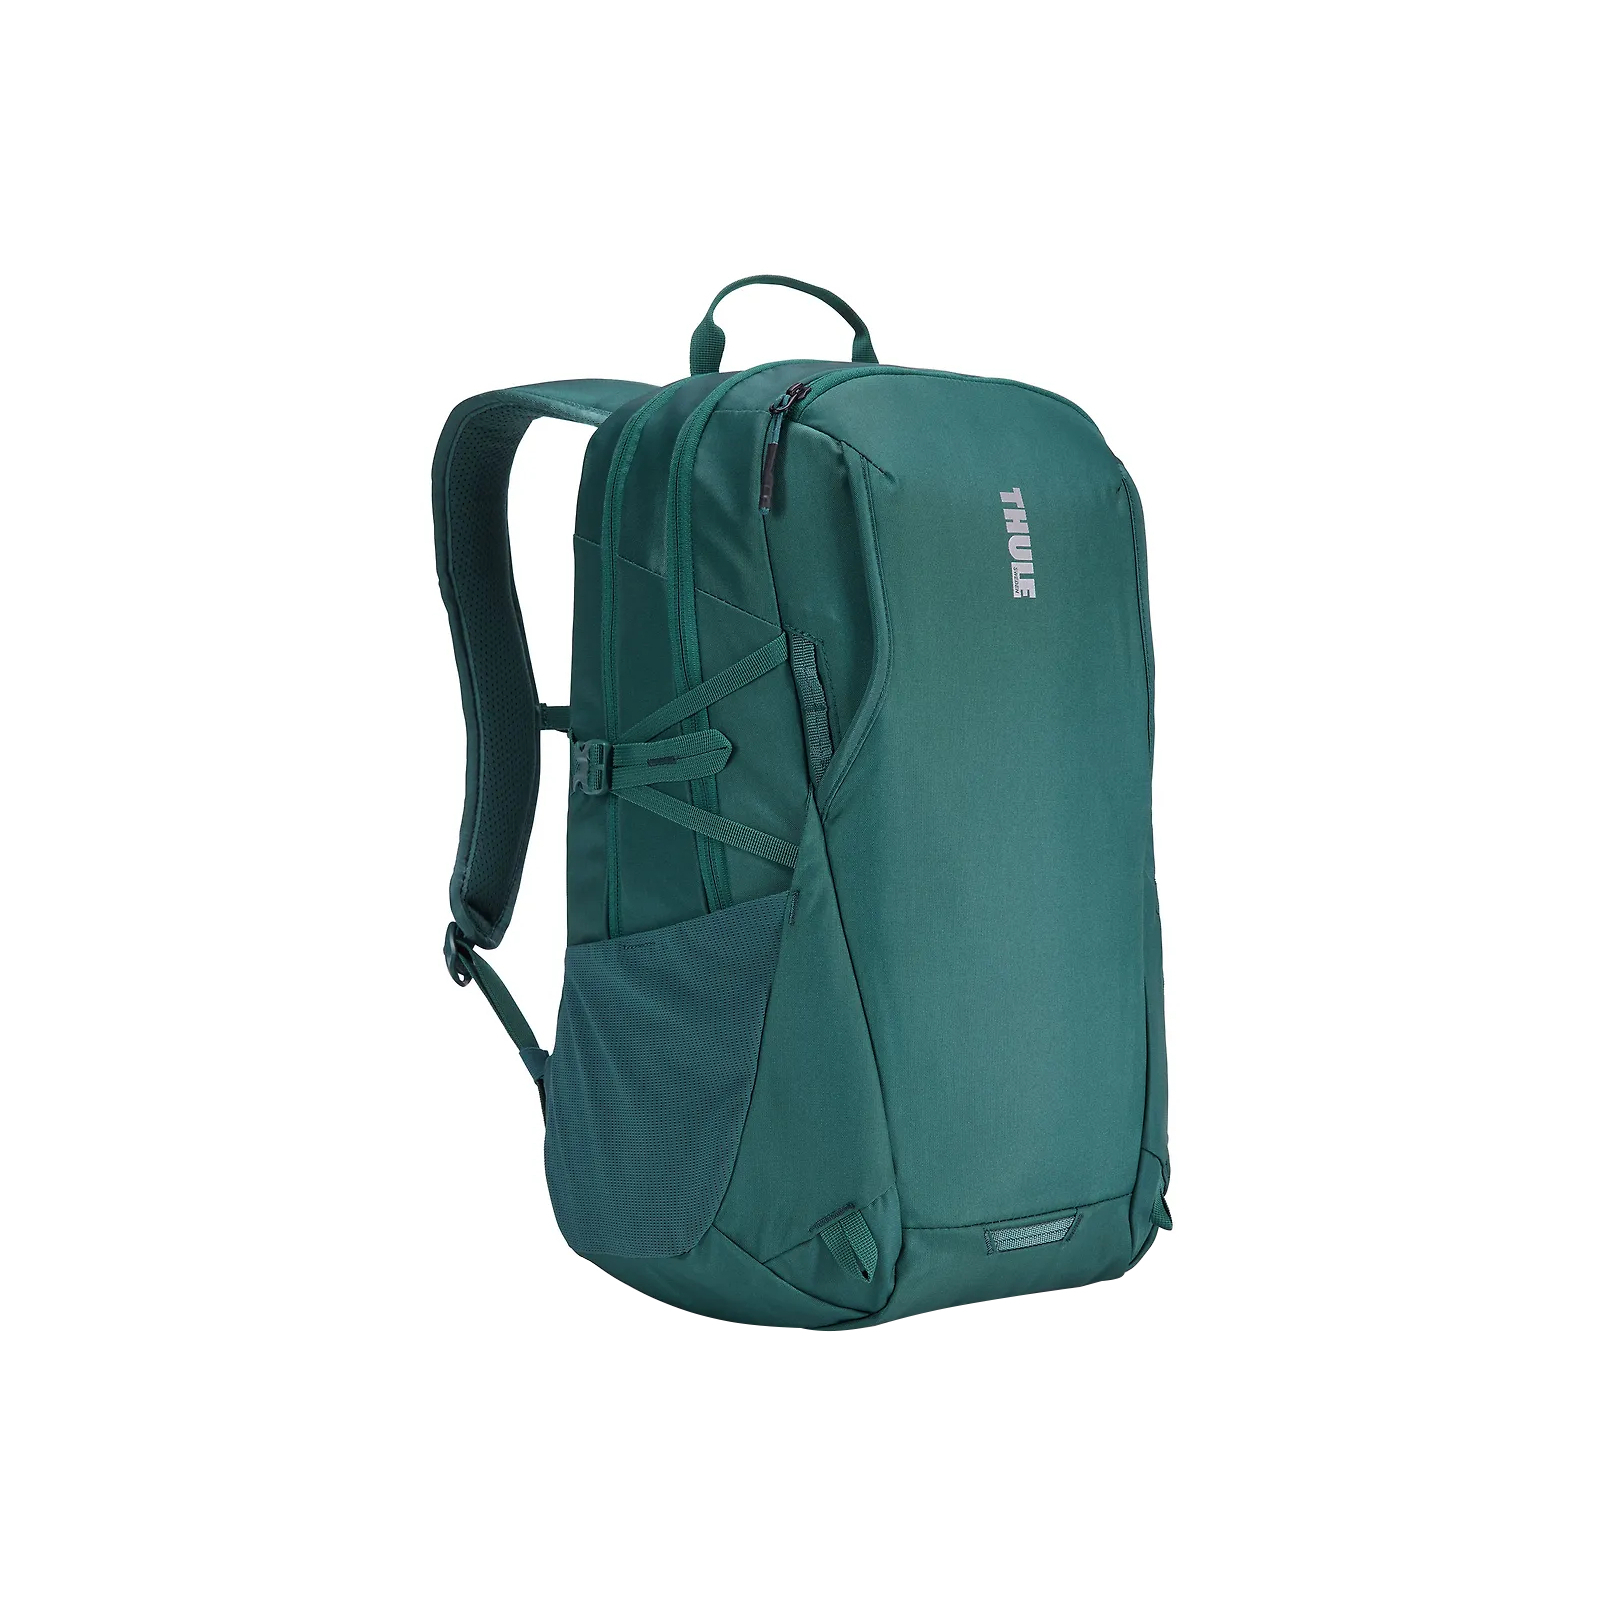 Рюкзак для ноутбука Thule 15.6" EnRoute 23L TEBP4216 Ochre/Golden (3204844)